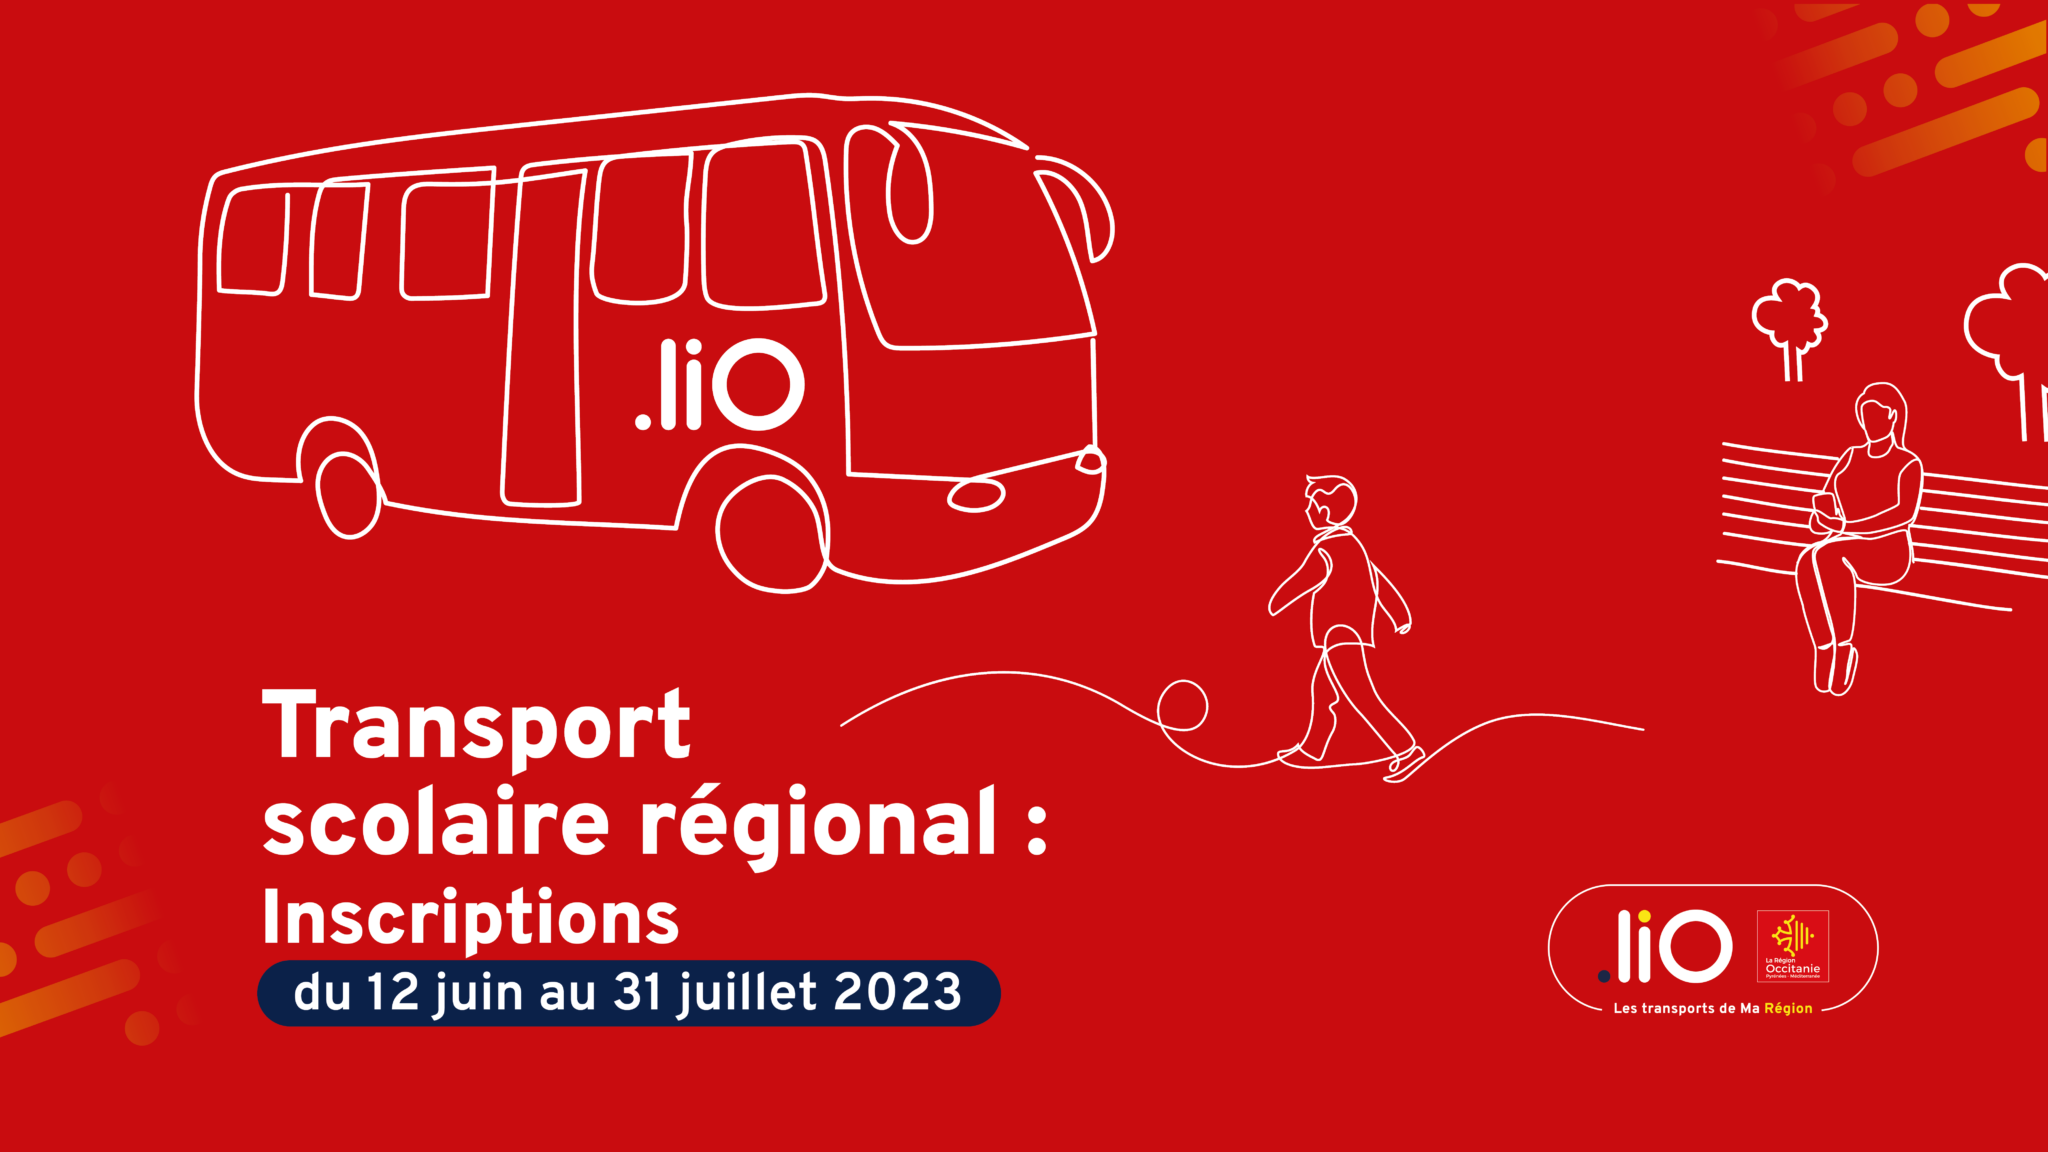 Transport scolaire régional : inscriptions du 12 juin au 31 juillet